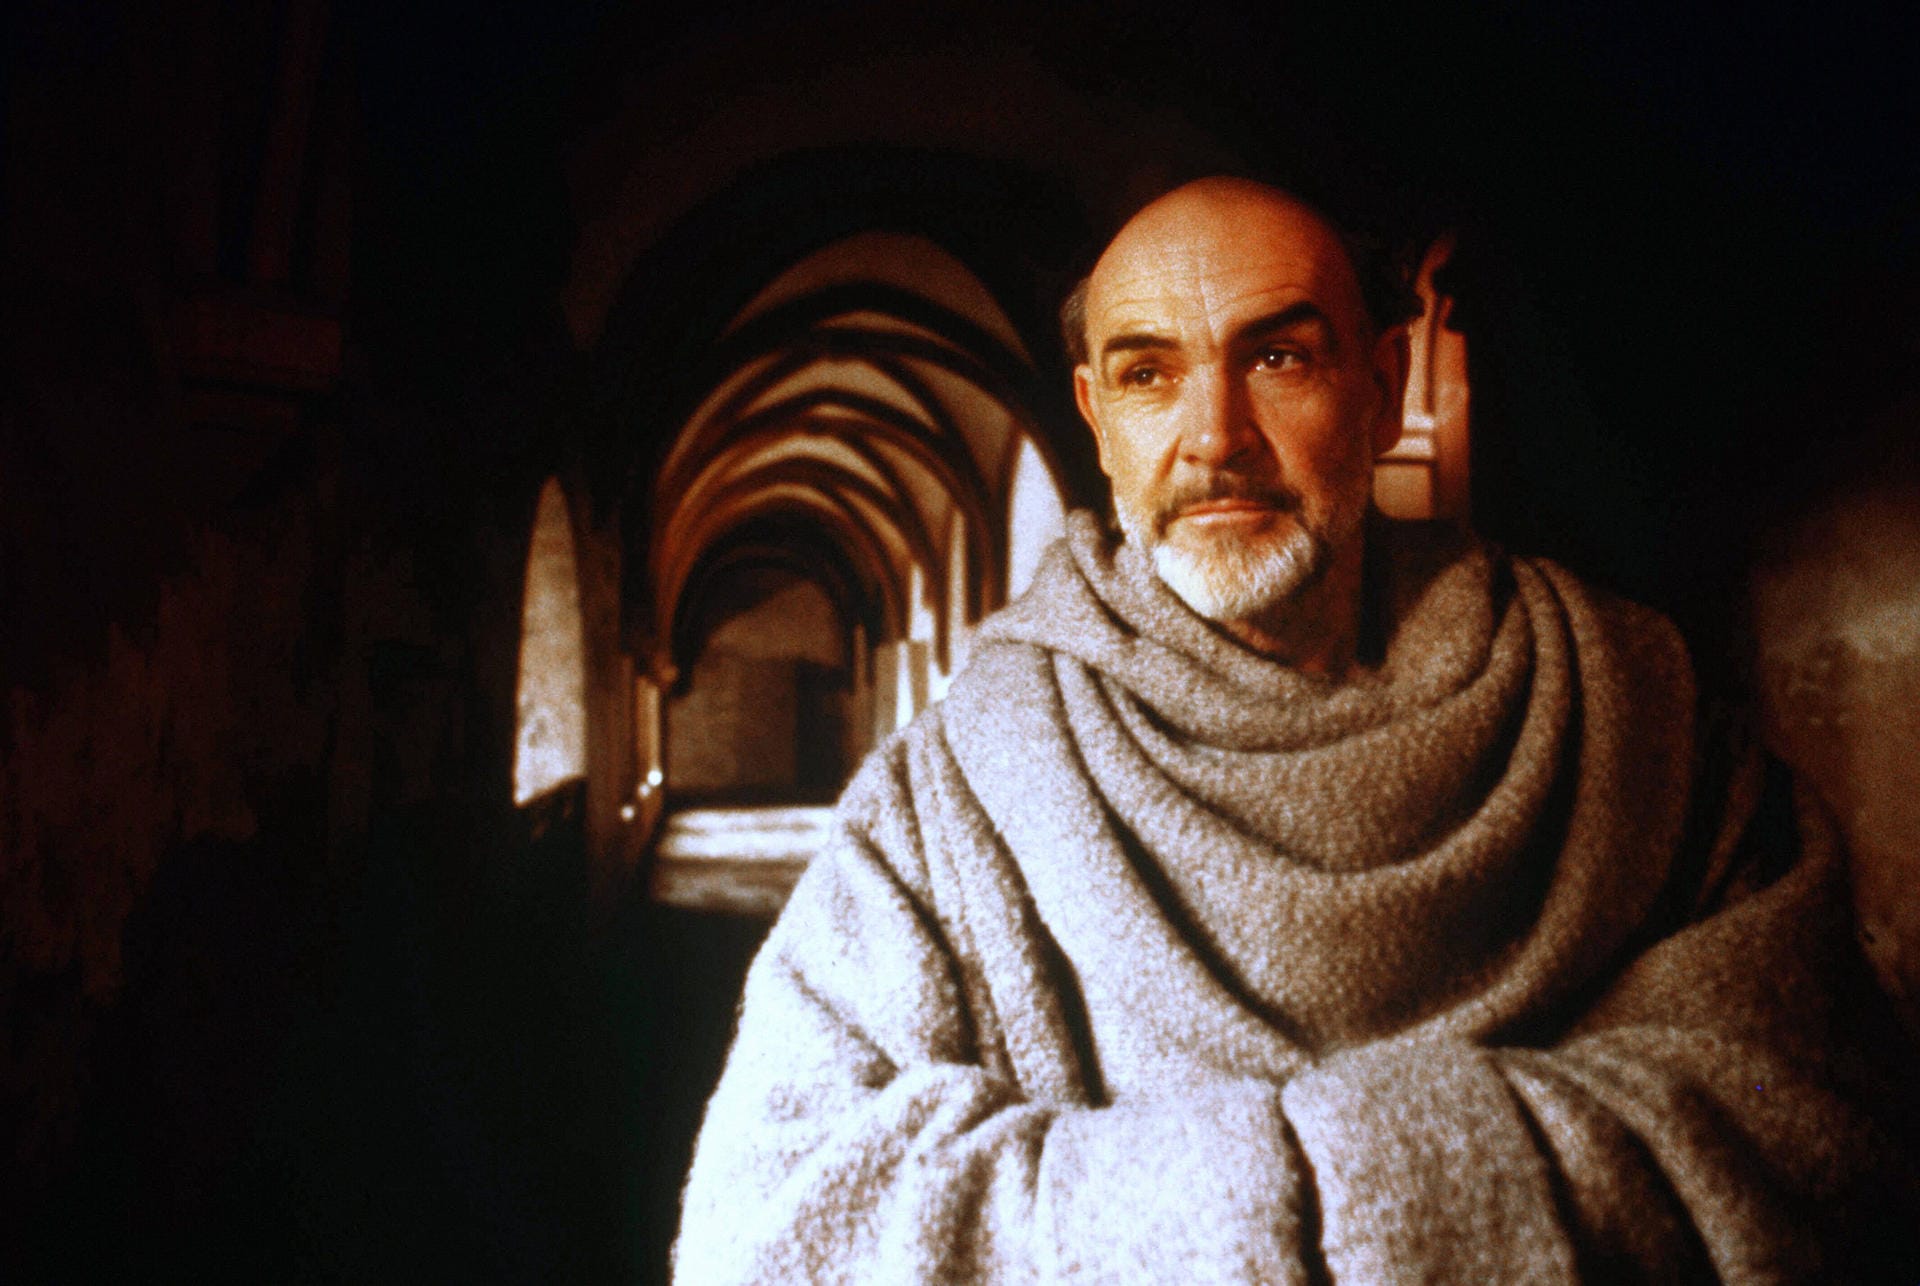 1986: Sean Connery spielt in "Der Name der Rose".